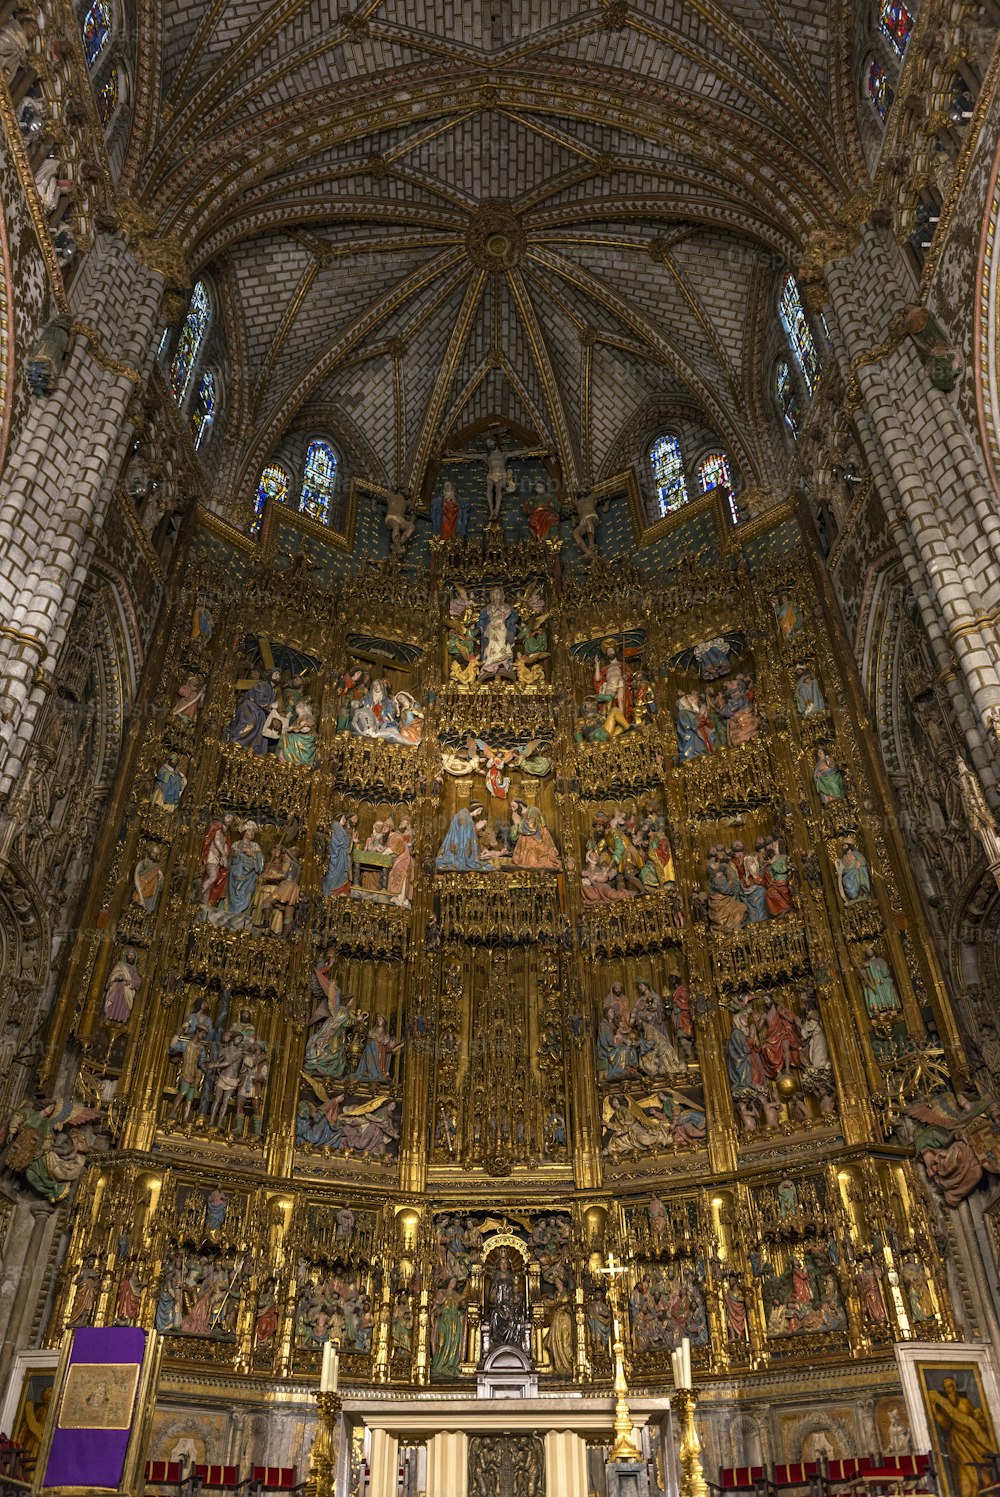 Innenansicht des Retabels und des Hochaltars der Kathedrale von Toledo (Primatenkathedrale der Heiligen Maria von Toledo), ein äußerst blühendes gotisches Altarbild und eines der letzten Beispiele dieses Kunststils. Die Kathedrale von Toledo ist eine der drei hochgotischen Kathedralen Spaniens aus dem 13. Jahrhundert und gilt als das Hauptwerk der Gotik in Spanien.